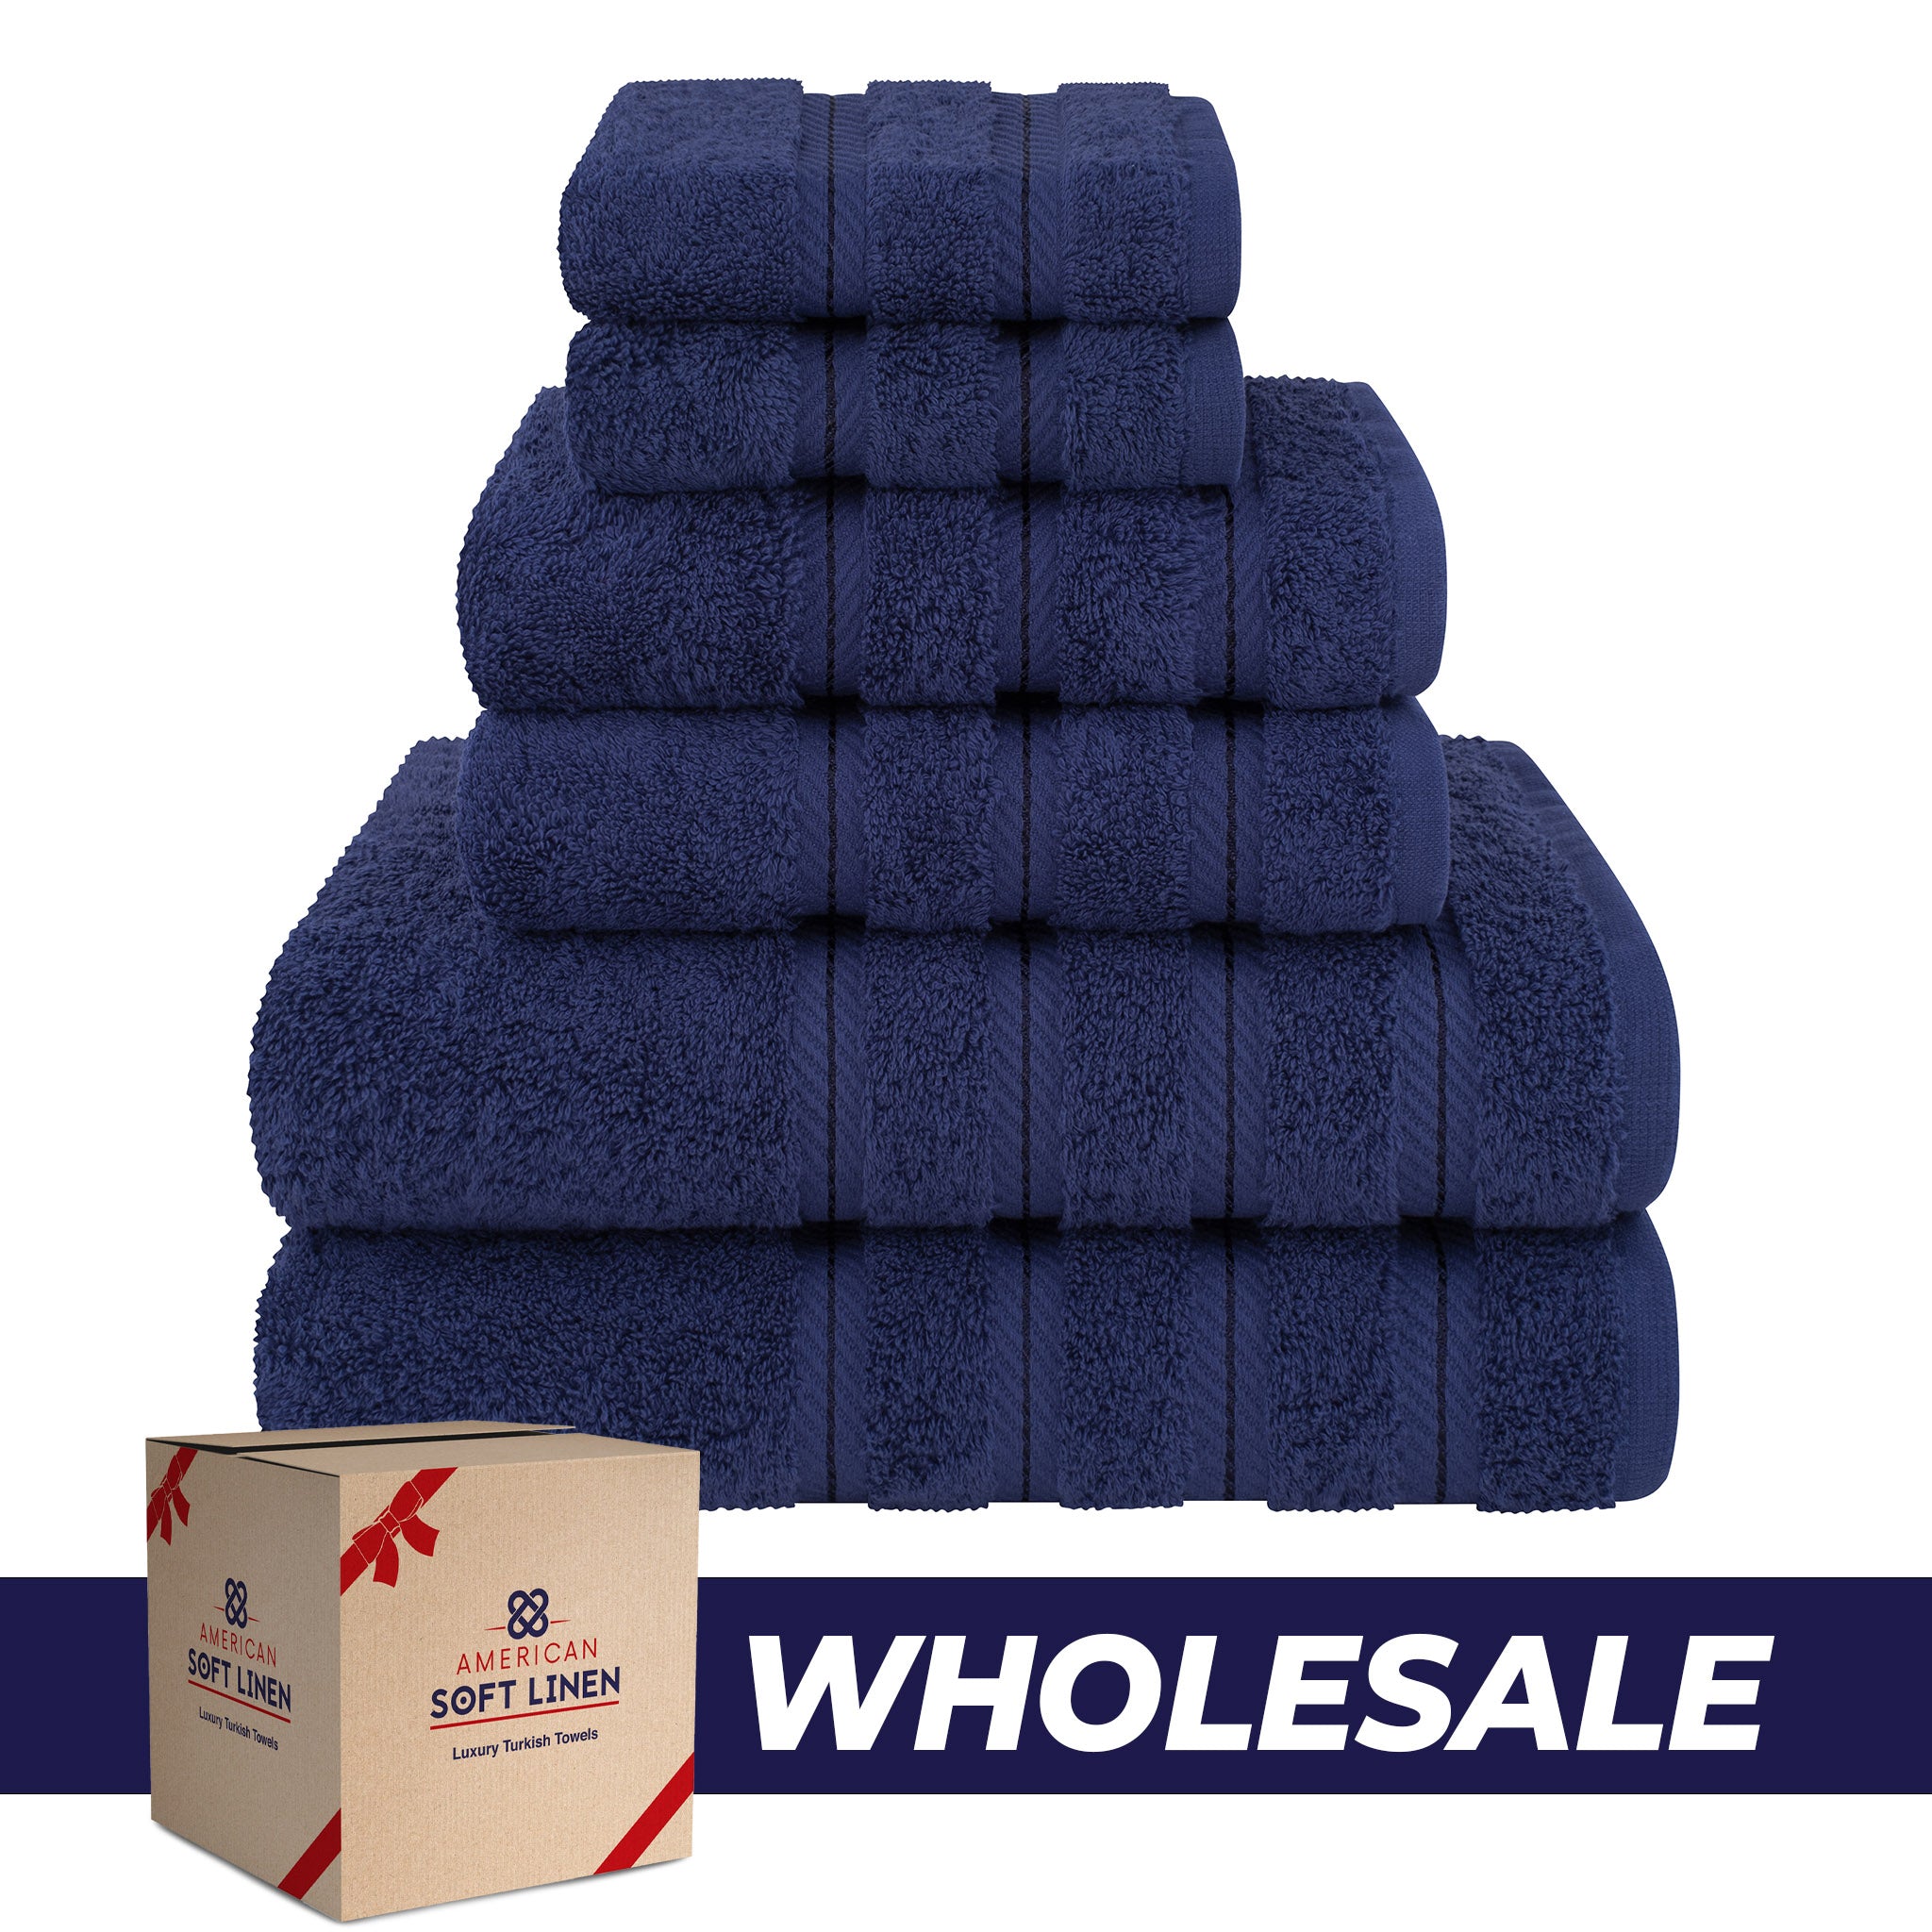 American Soft Linen 100% Turkish Cotton 6 Piece Towel Set Wholesale navy-blue-0